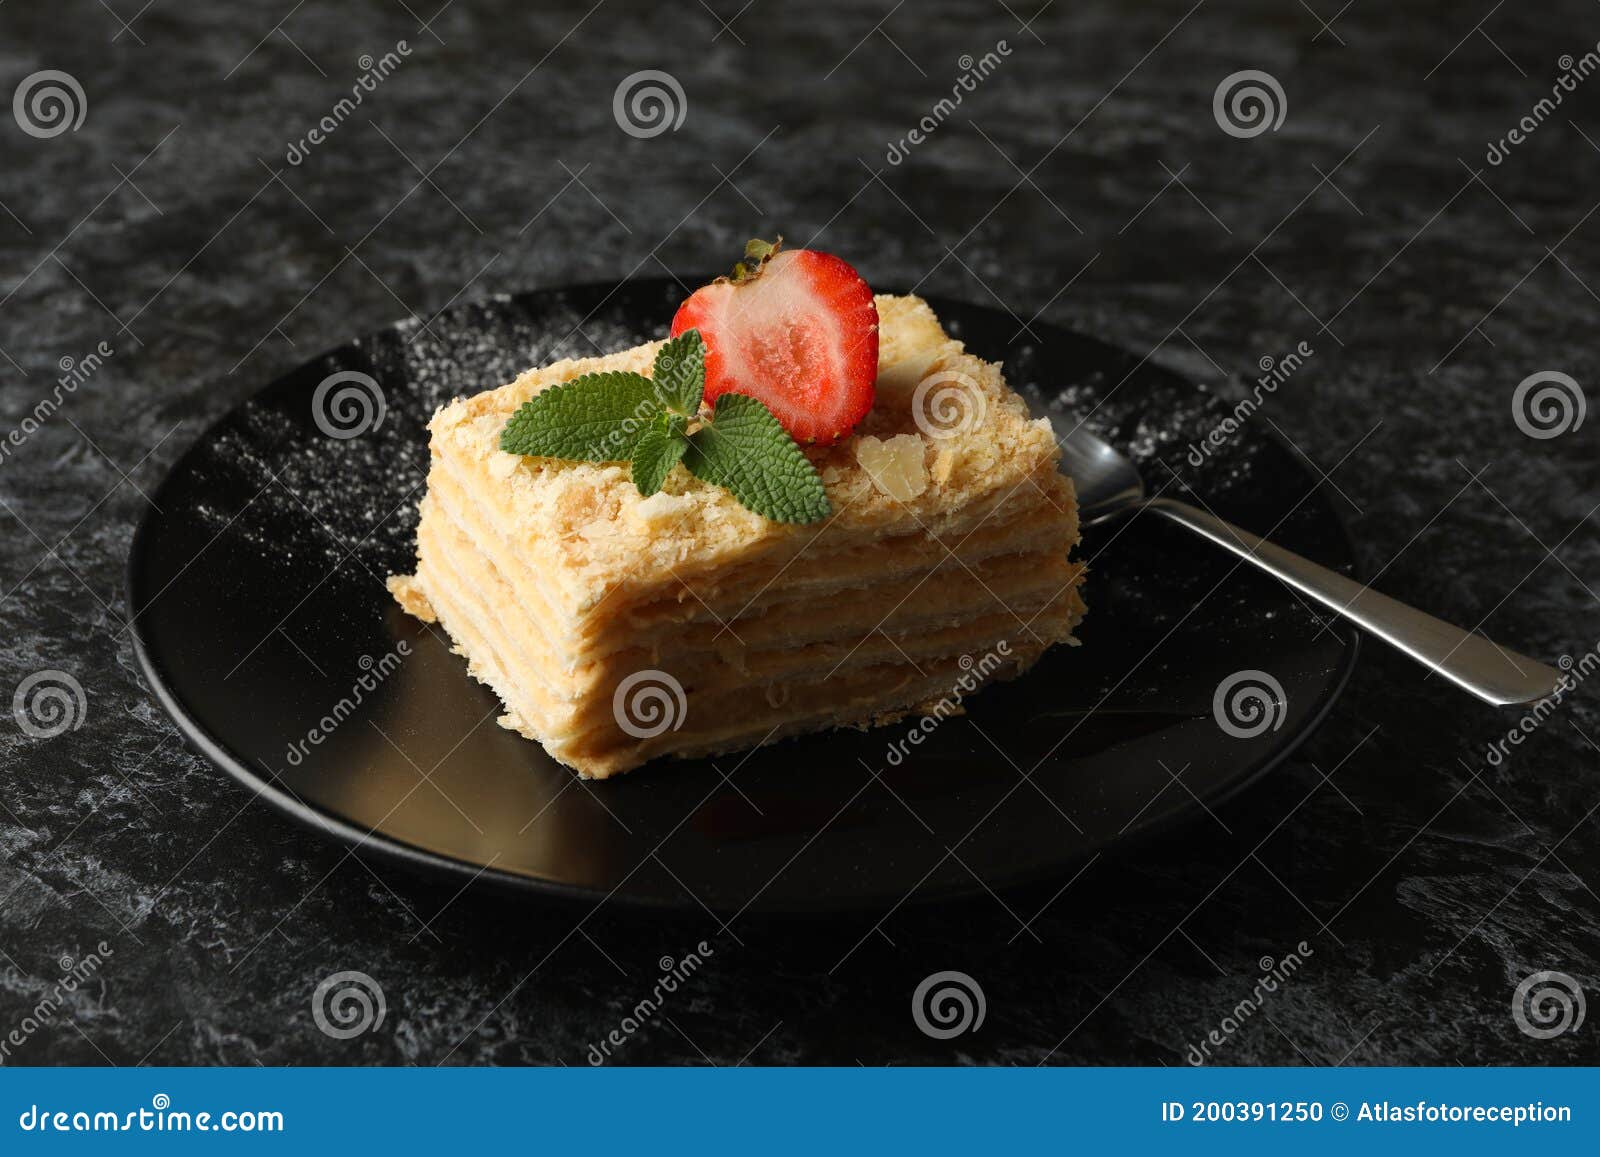 新鲜出炉的拿破仑草莓和奶油蛋糕甜点餐饮美食免费下载_jpg格式_2832像素_编号42408385-千图网